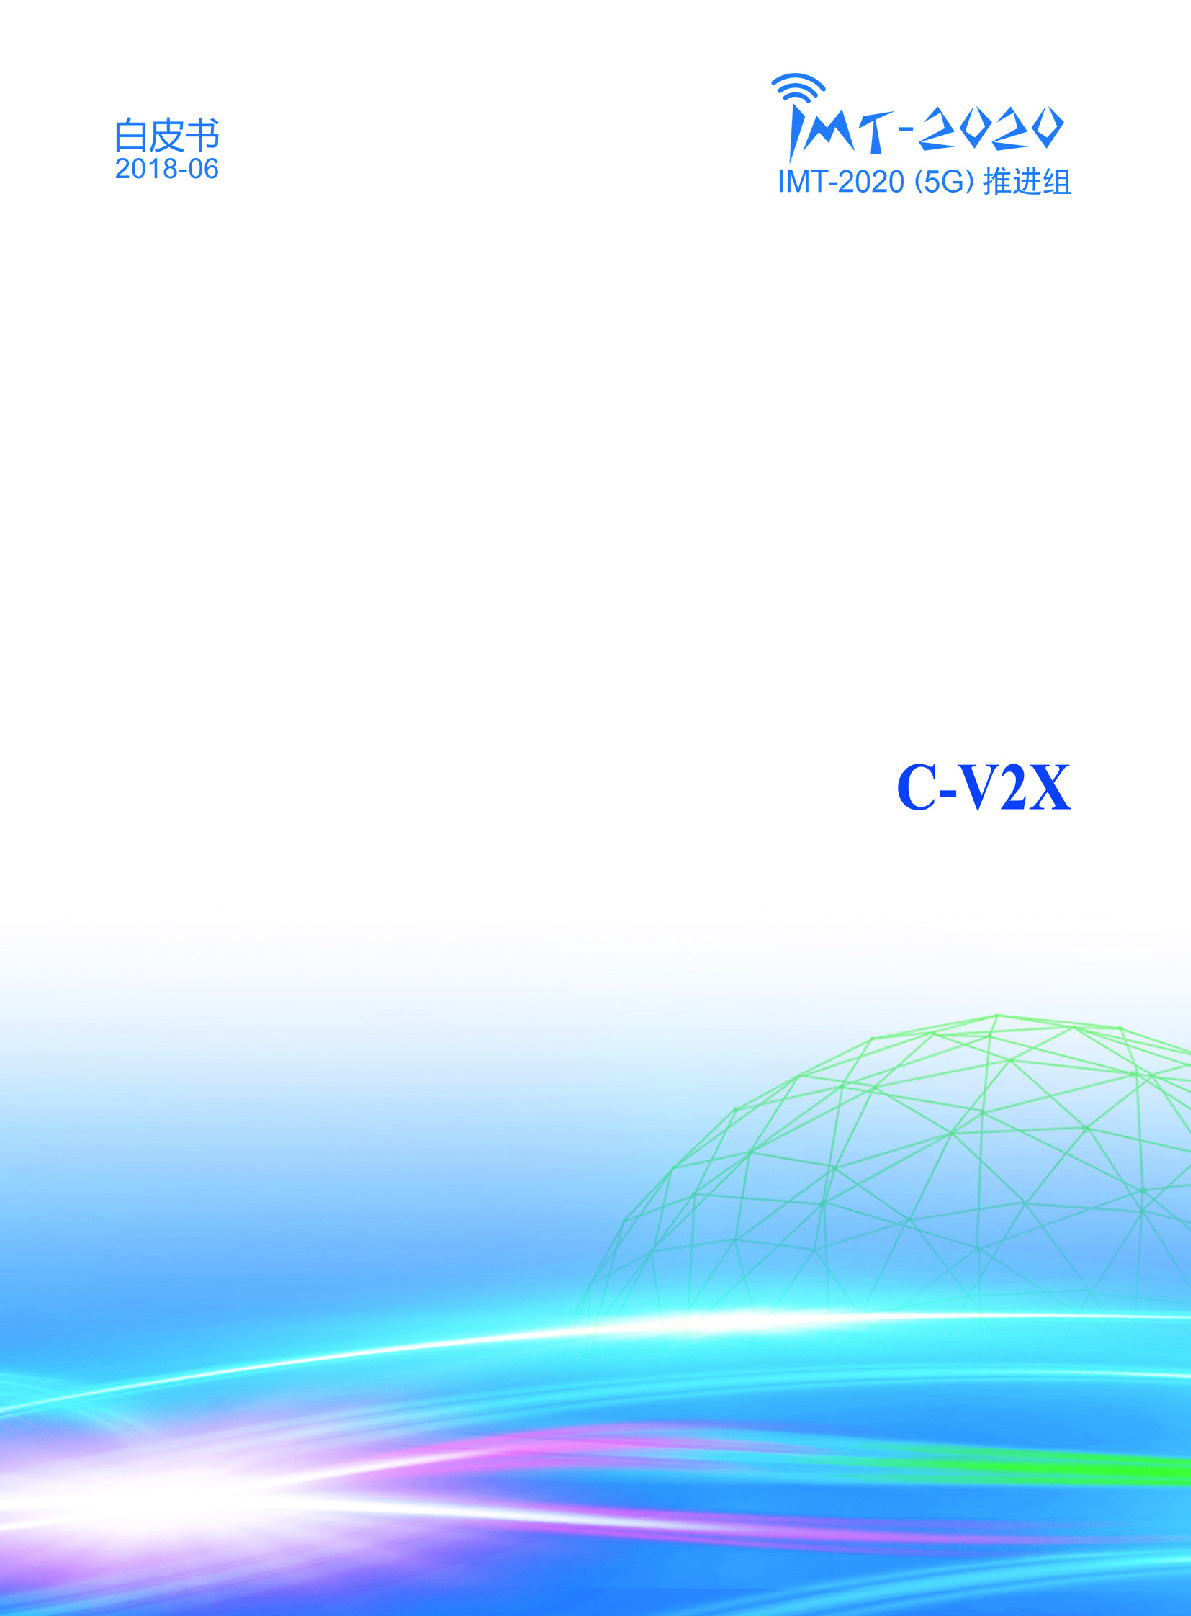 C-V2X白皮书